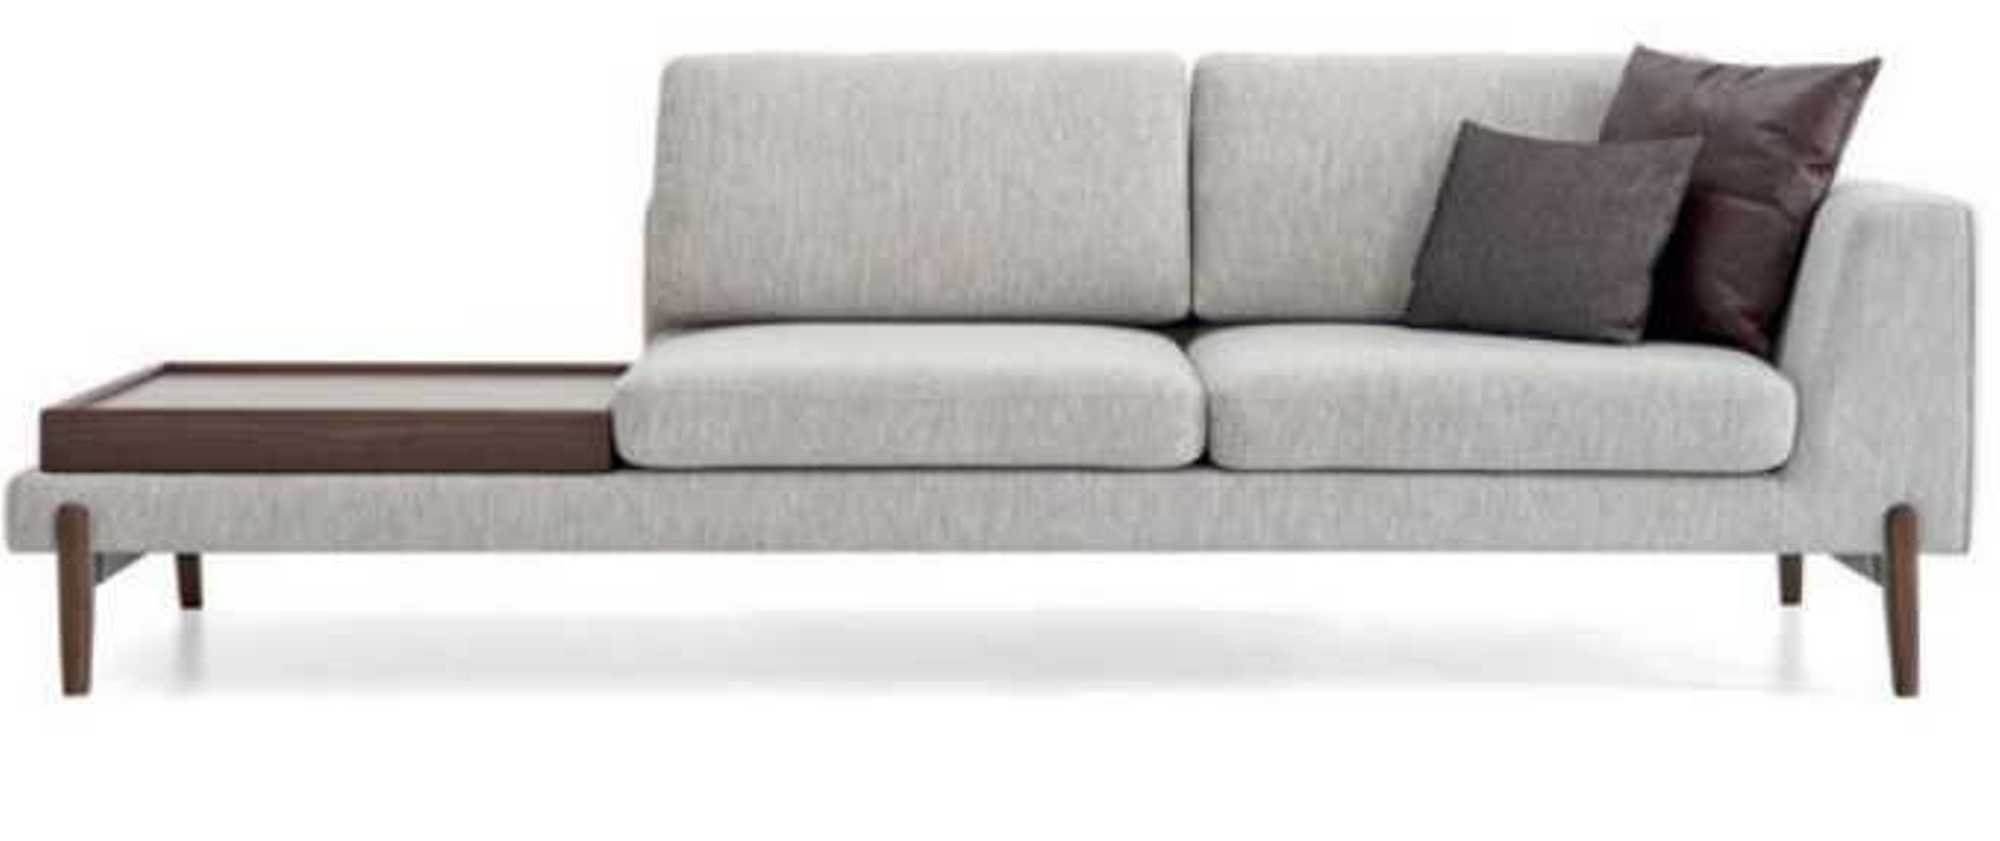 JVmoebel Sofa Luxus Wohnzimmer Sofa Modernen Design Holz mit Textil, 1 Teile, Made in Europa